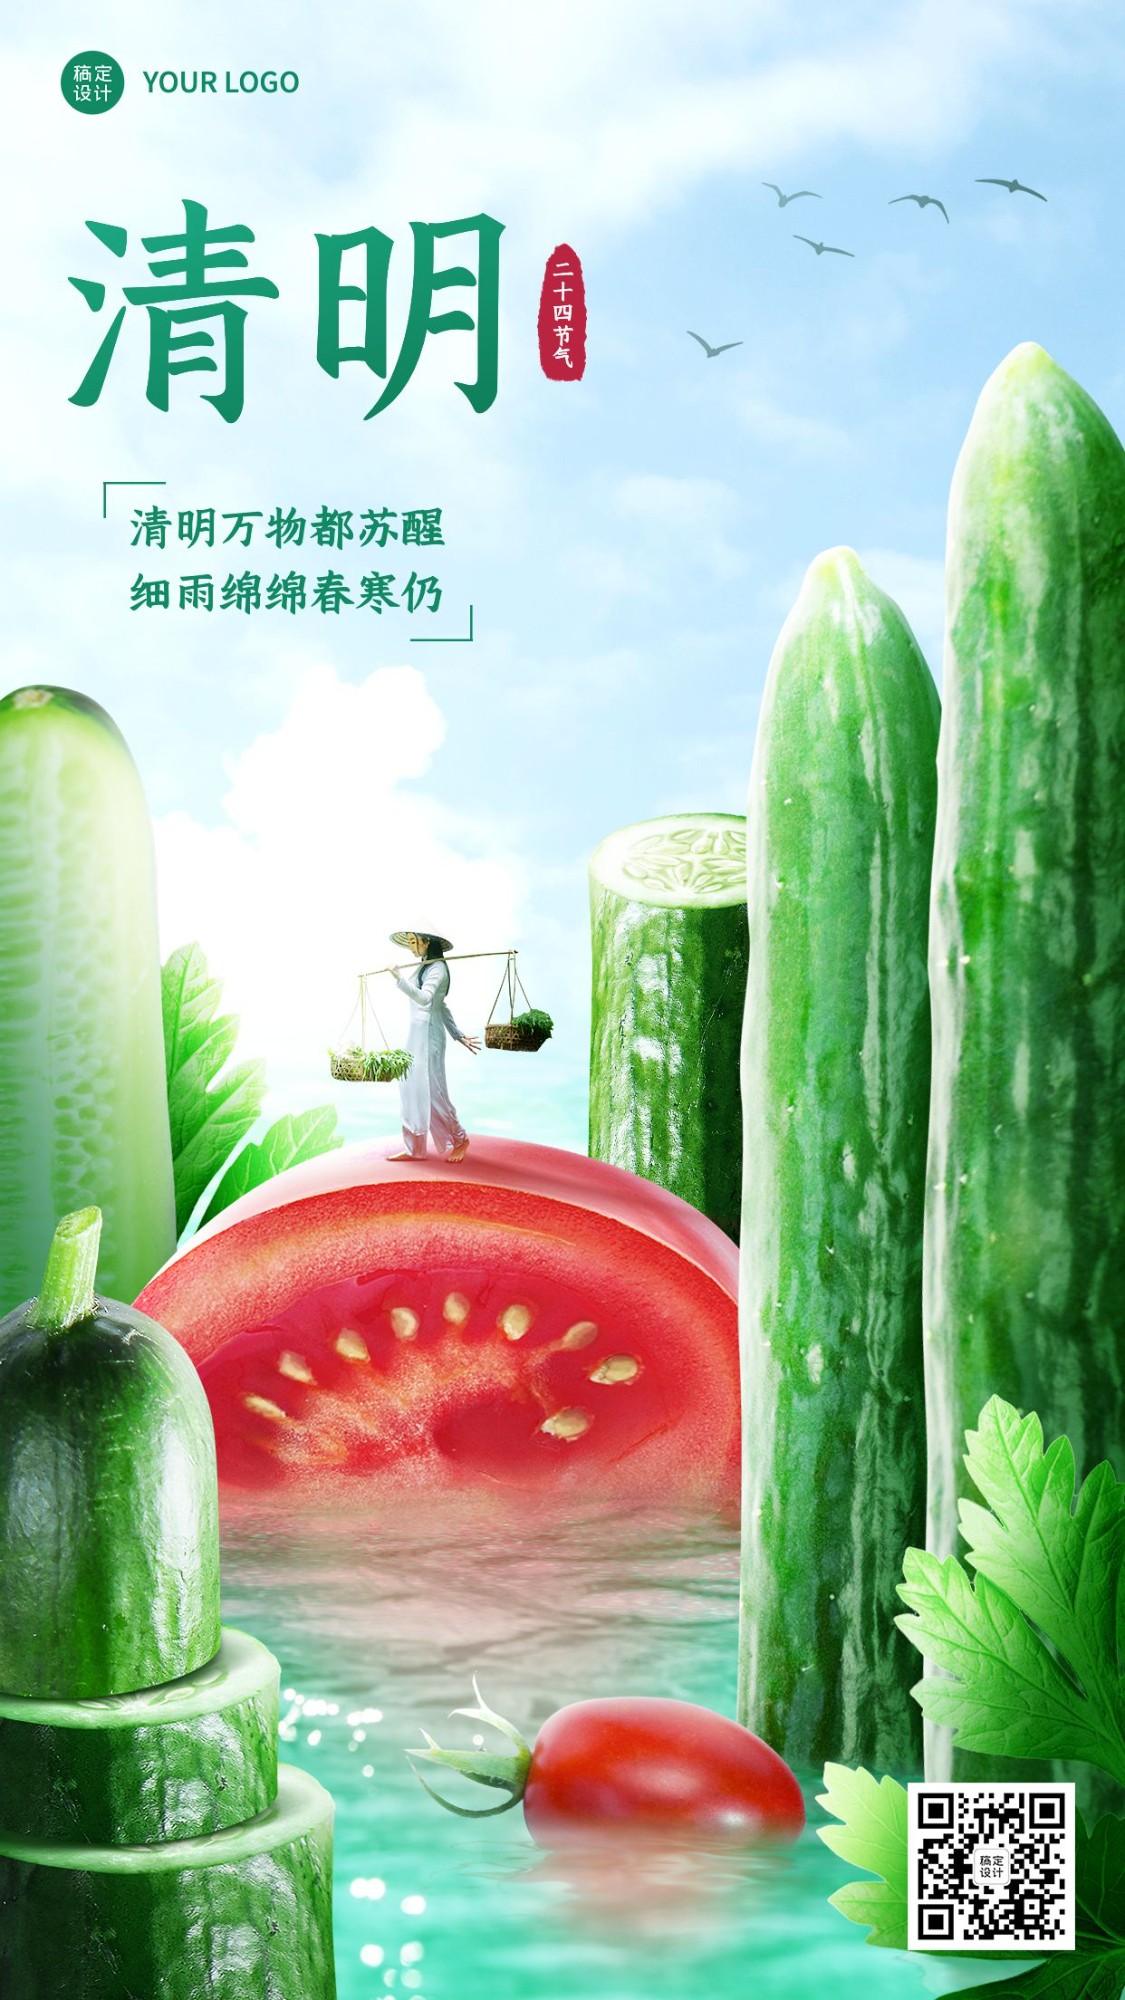 24节气套系清明节气祝福生鲜蔬菜实景微缩手机海报预览效果